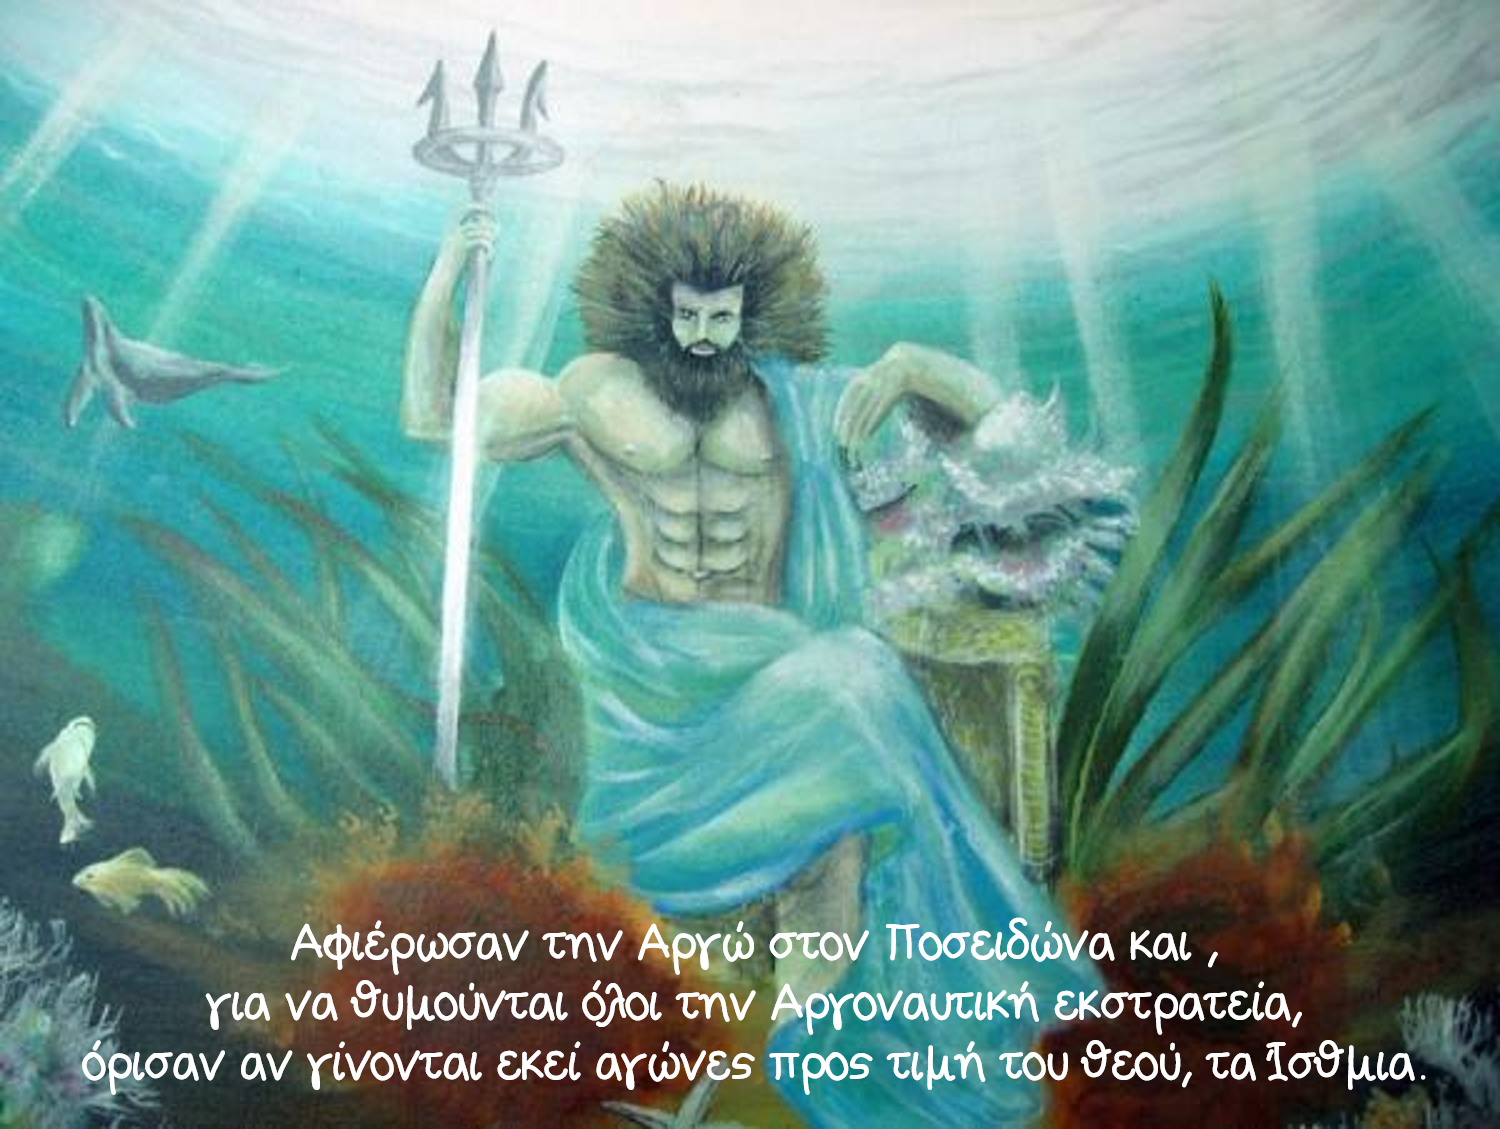 Боги воды в мифологии. Нептун Бог морей. Нептун Посейдон мифология. Посейдон морской царь. Посейдон Бог морей.